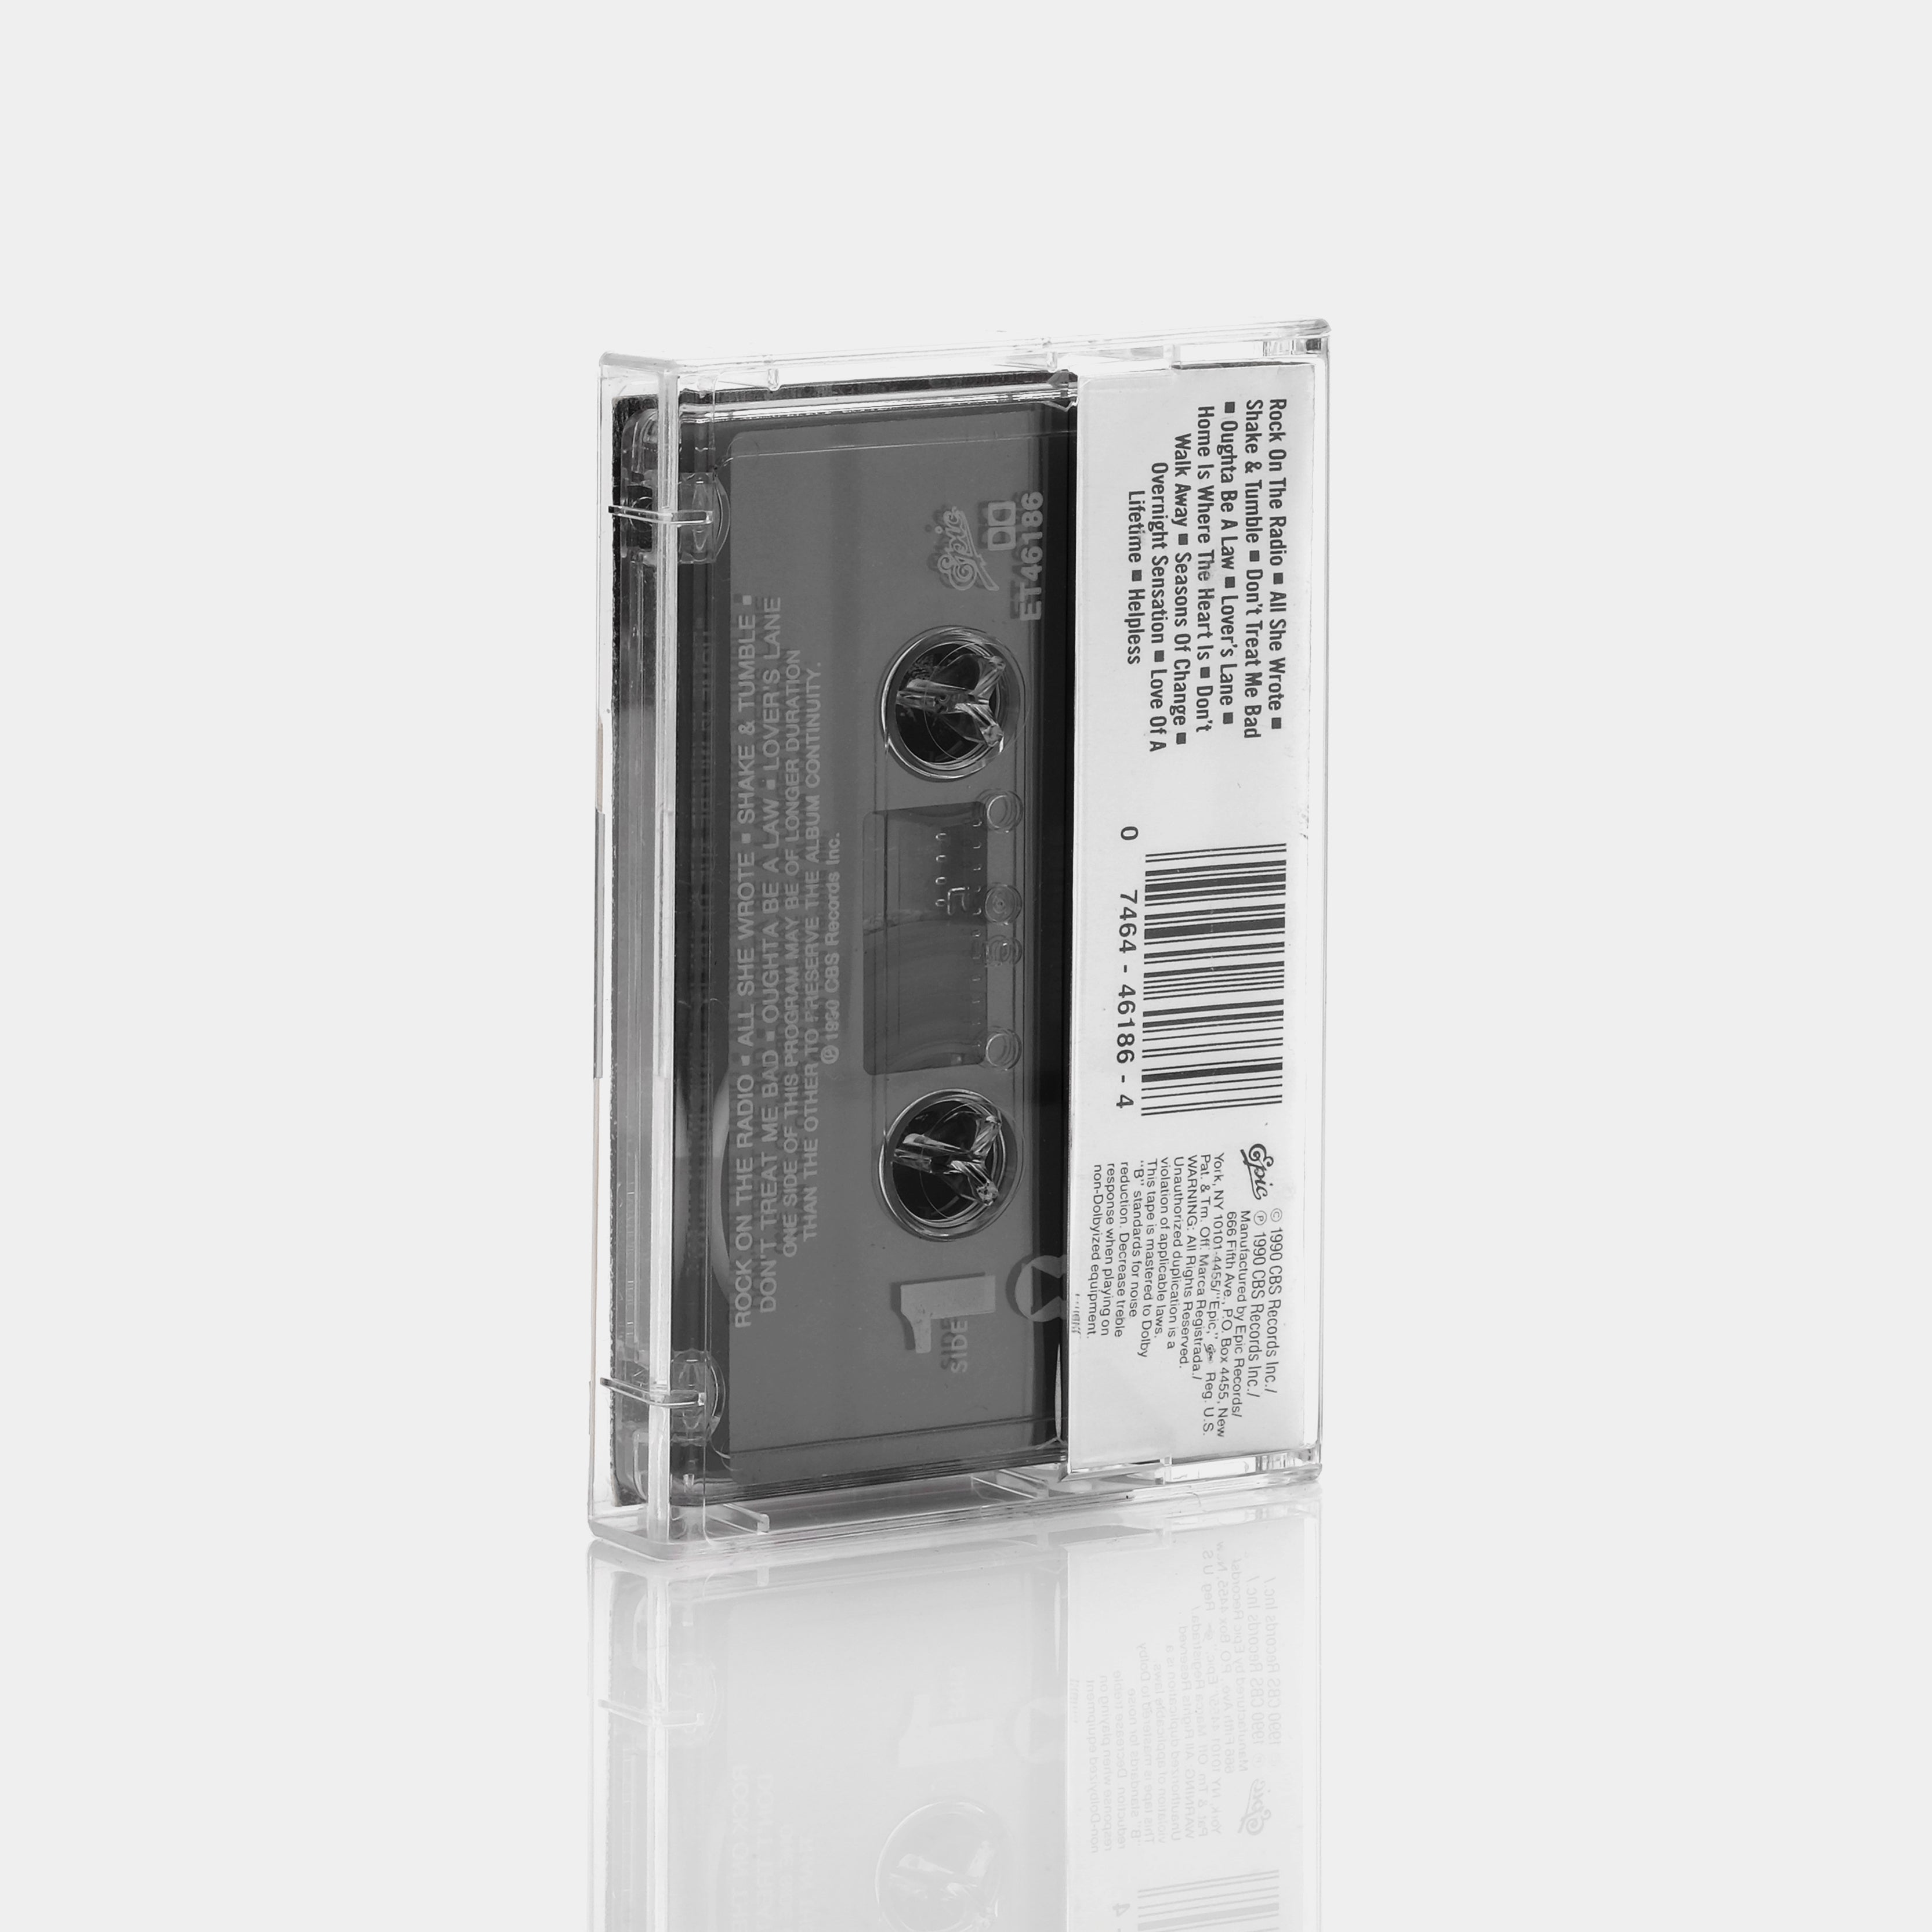 Firehouse - Firehouse Cassette Tape